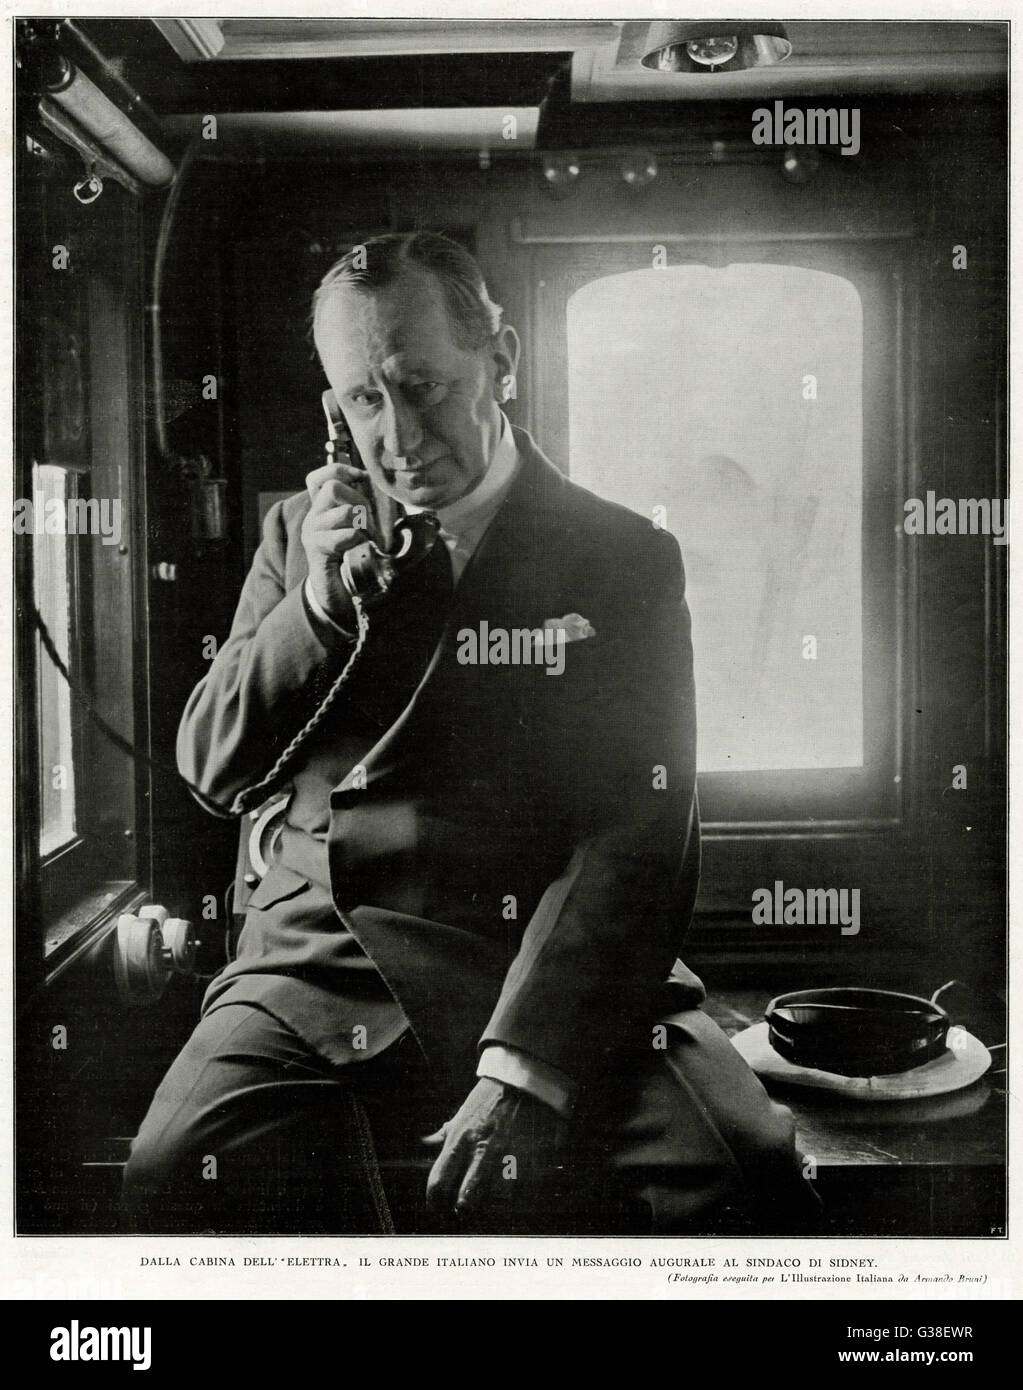 GUGLIELMO MARCONI inventore italiano, nella cabina del 'Electra', che istituisce il collegamento radio per l'Australia, 1930 Data: 1874 - 1937 Foto Stock